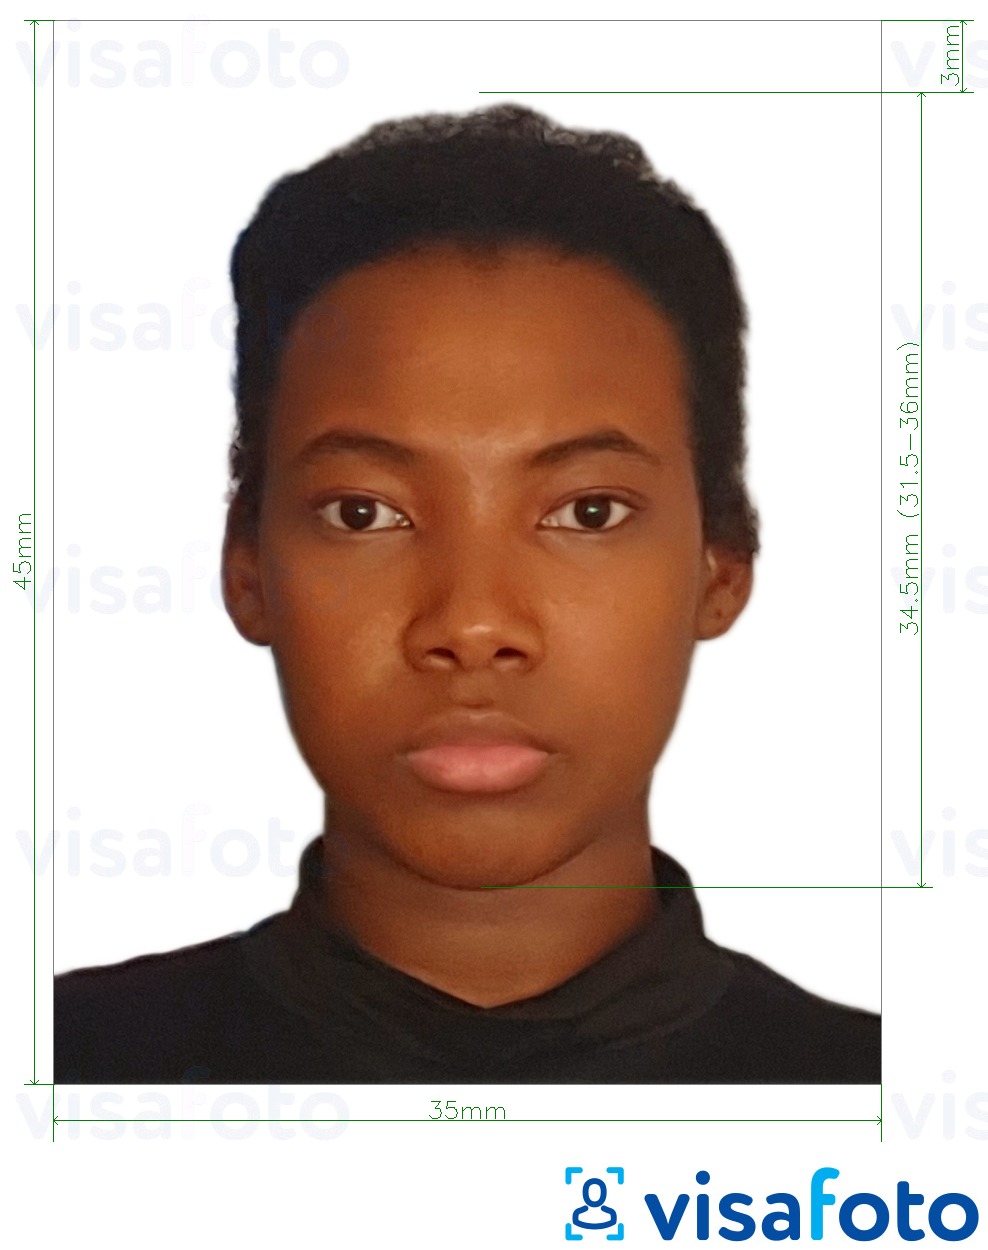  Benini pass 3.5x4.5 cm (35x45 mm) fotonäidis koos täpse infoga mõõtude kohta.